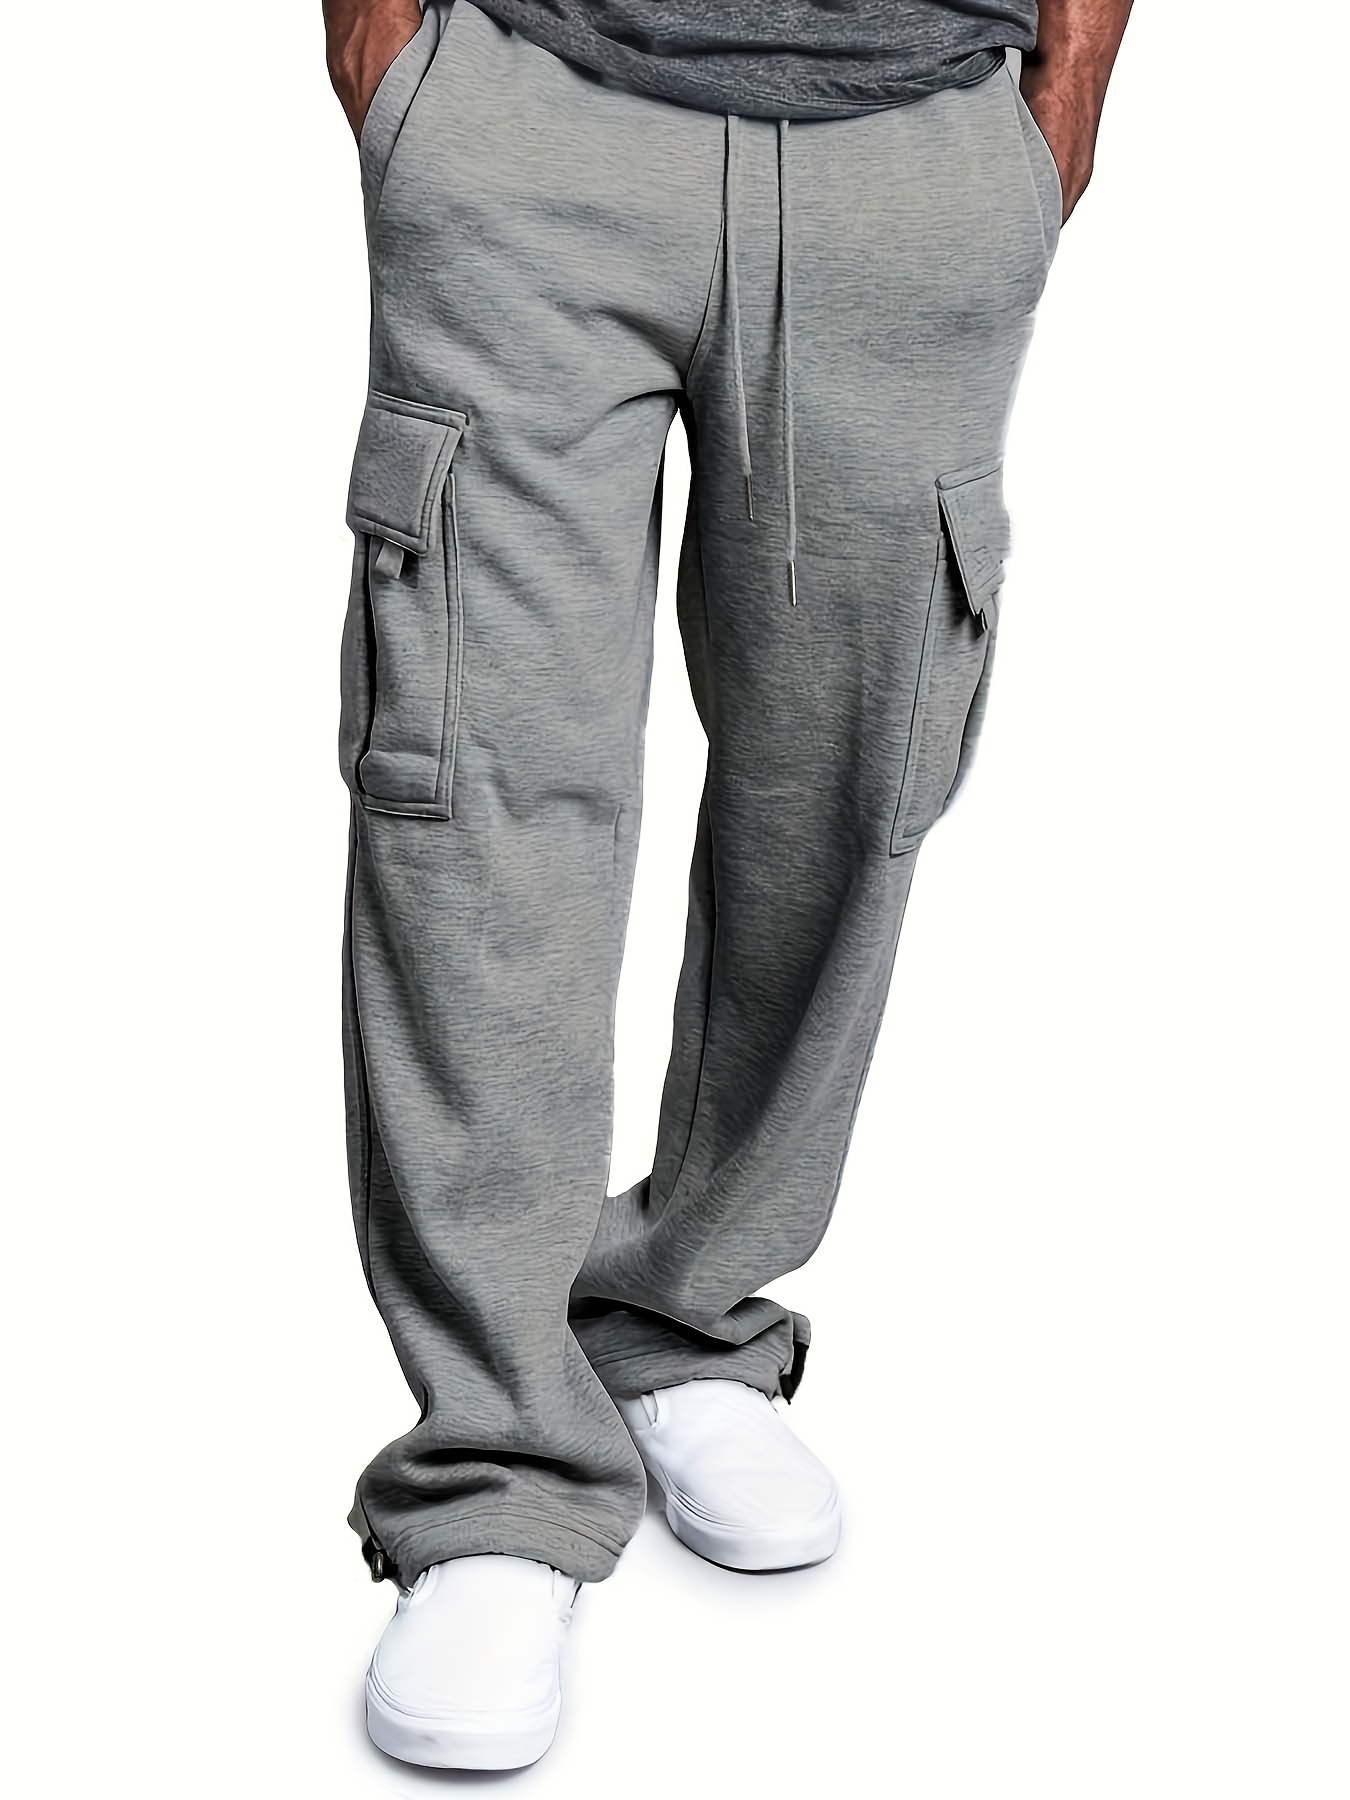 Plus Size Men's Fashion Gray Cargo Pants Joggers Sports Casual Pants Street  Wear Hip Hop Pants Cotton Pants Sweatpants Men‘s Long Pant